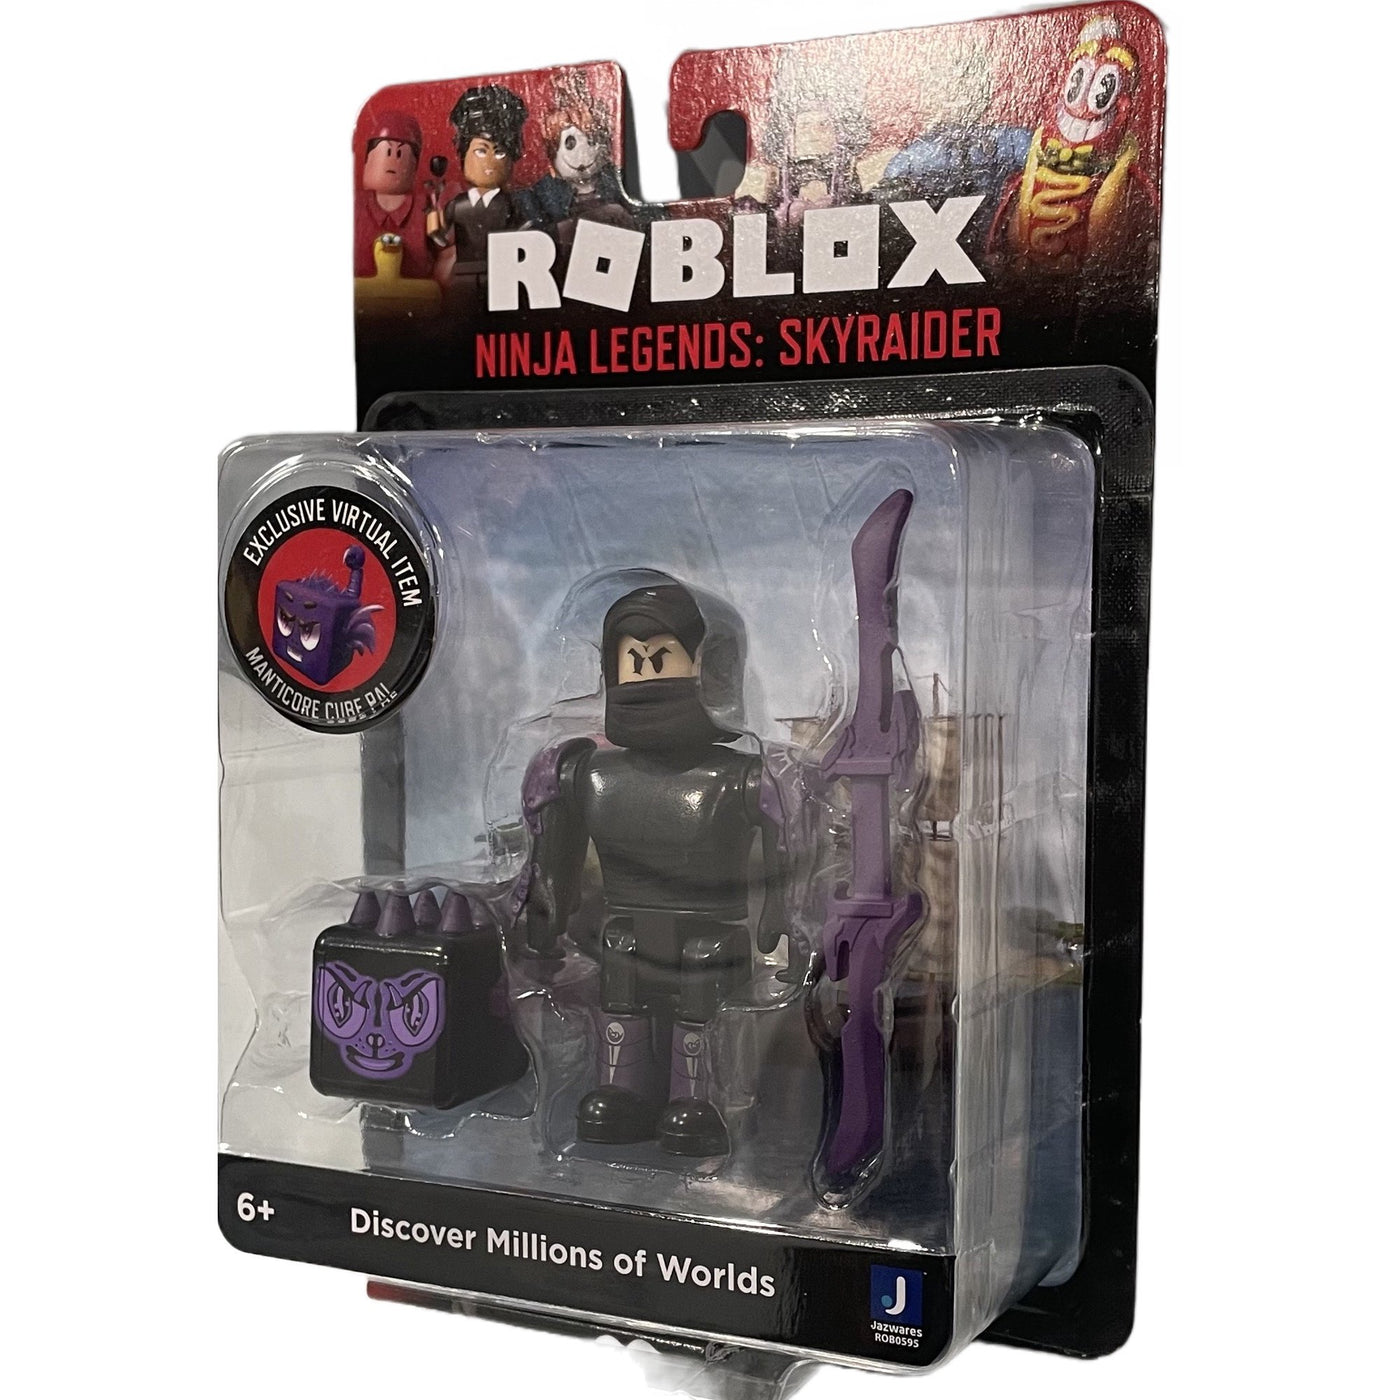 Figurine Roblox Core